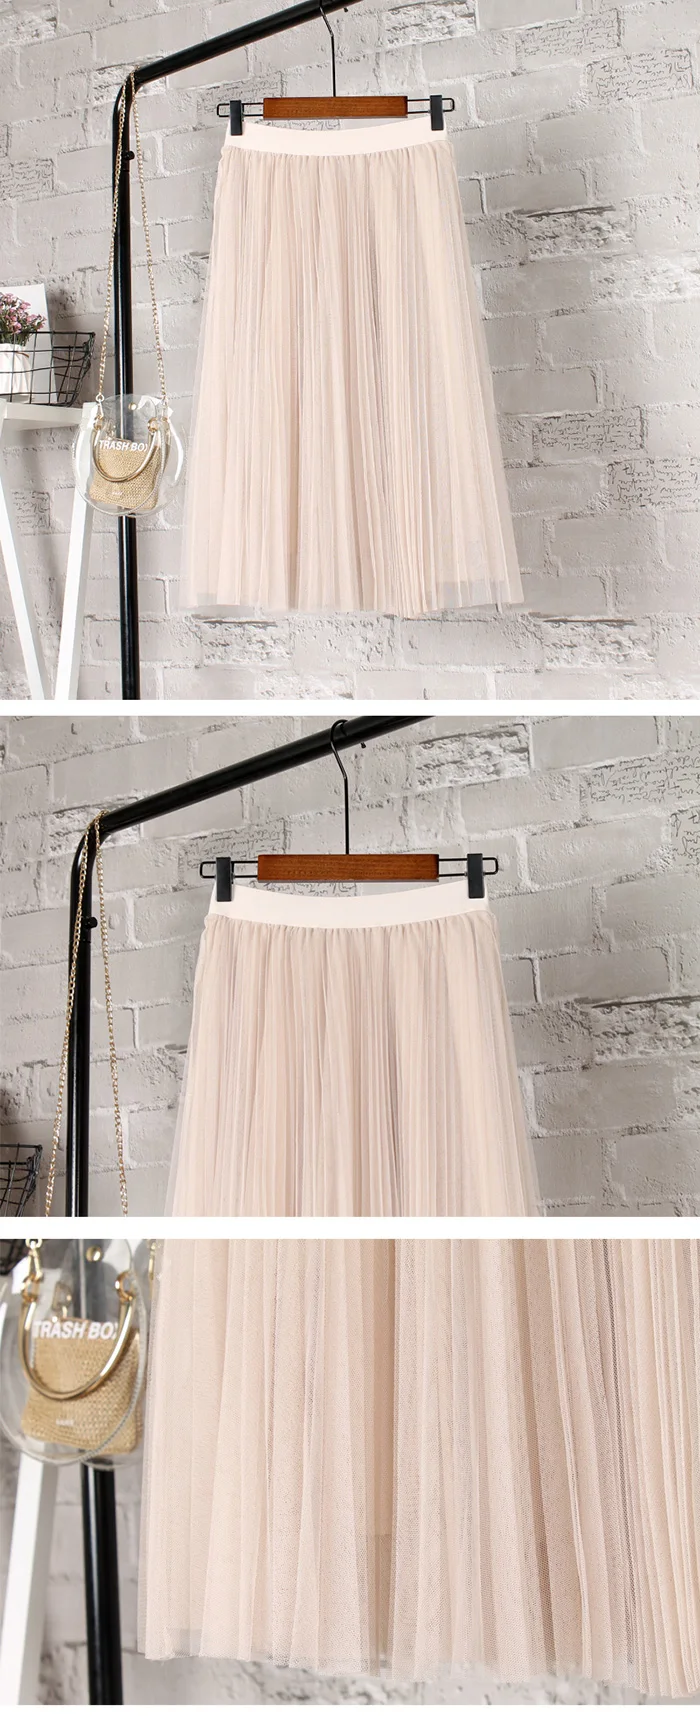 Тюлевая юбка s Для женщин s миди плиссированная юбка черный, розовый Женская юбка из тюля 2019 корейские демисезонные эластичные Высокая